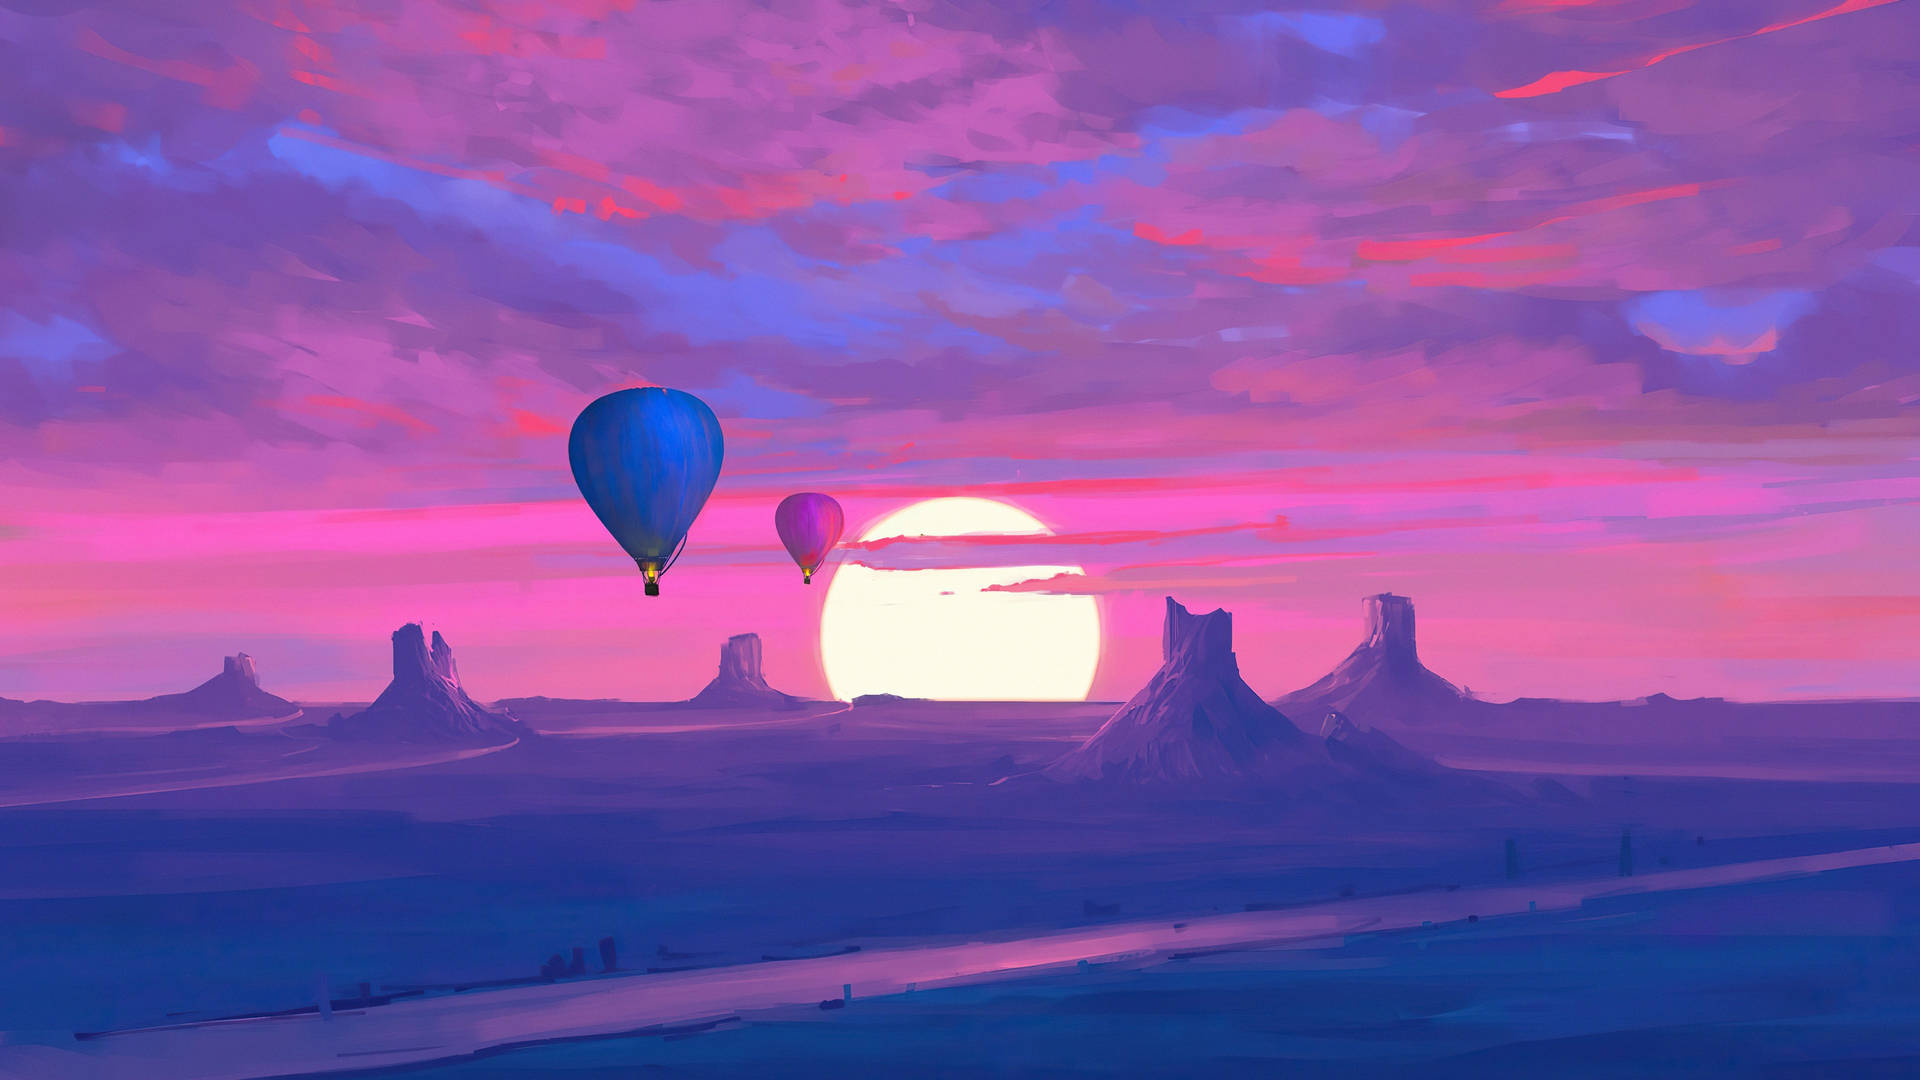 Desert Sun And Hot Air Balloons Wallpaper